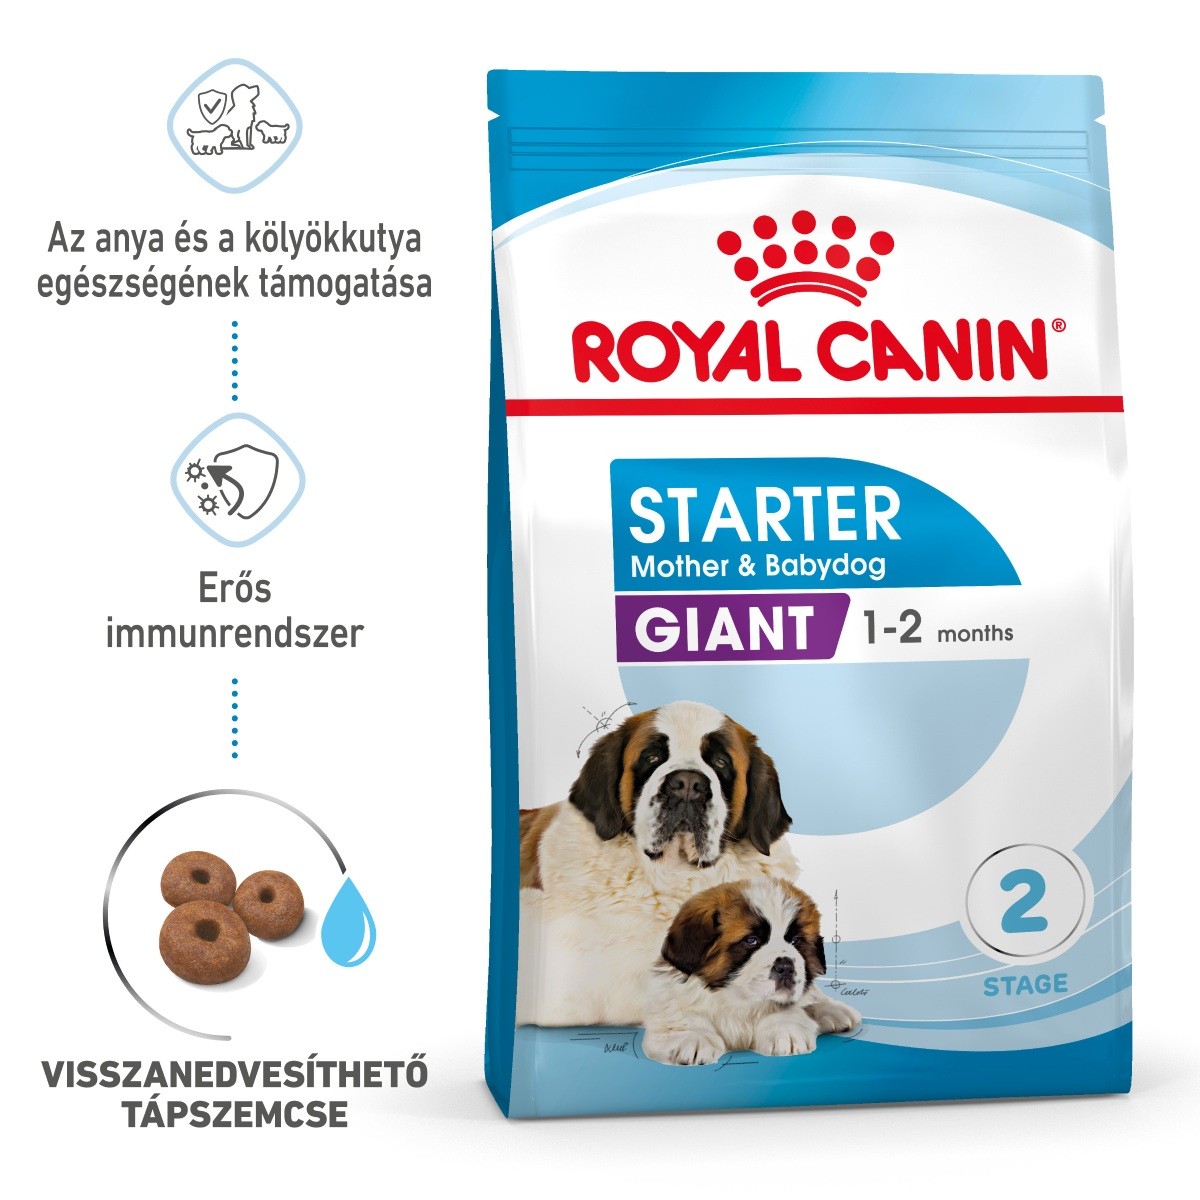 Royal Canin Giant Starter Mother & Babydog - óriás testű kölyök és vemhes kutya száraz táp 15 kg